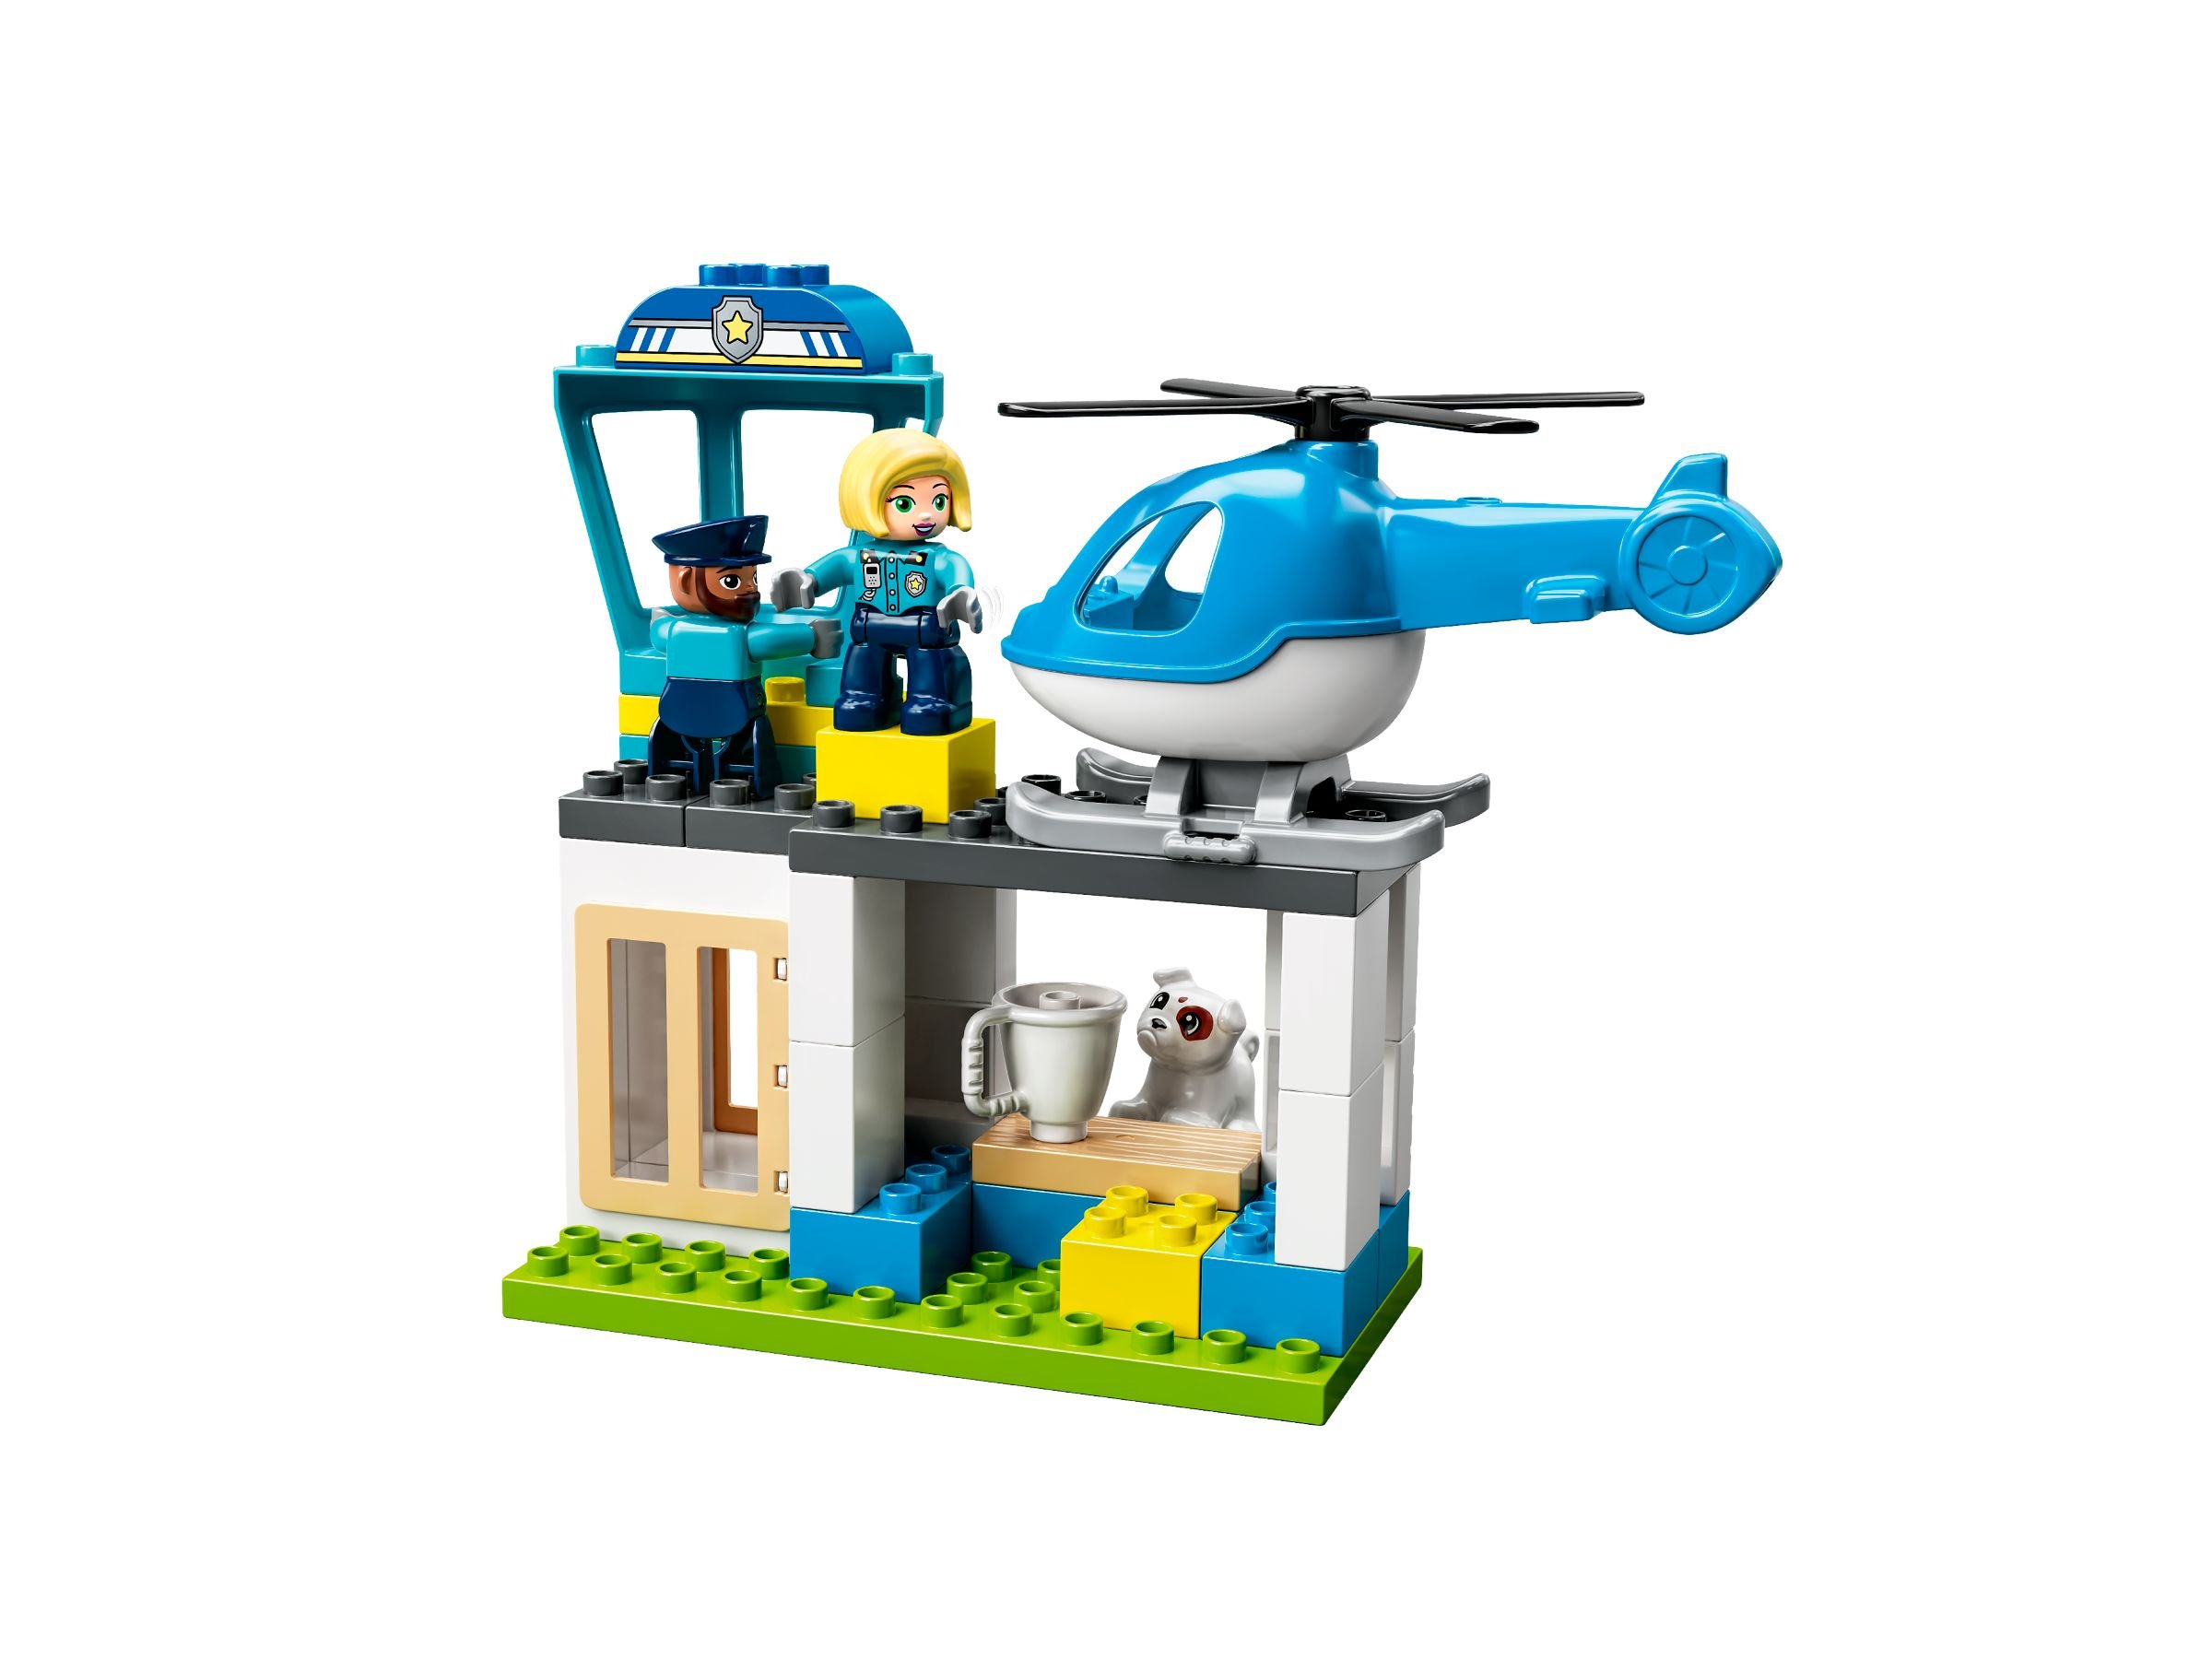 LEGO Duplo 10959 Polizeistation mit Hubschrauber LEGO_10959_alt2.jpg